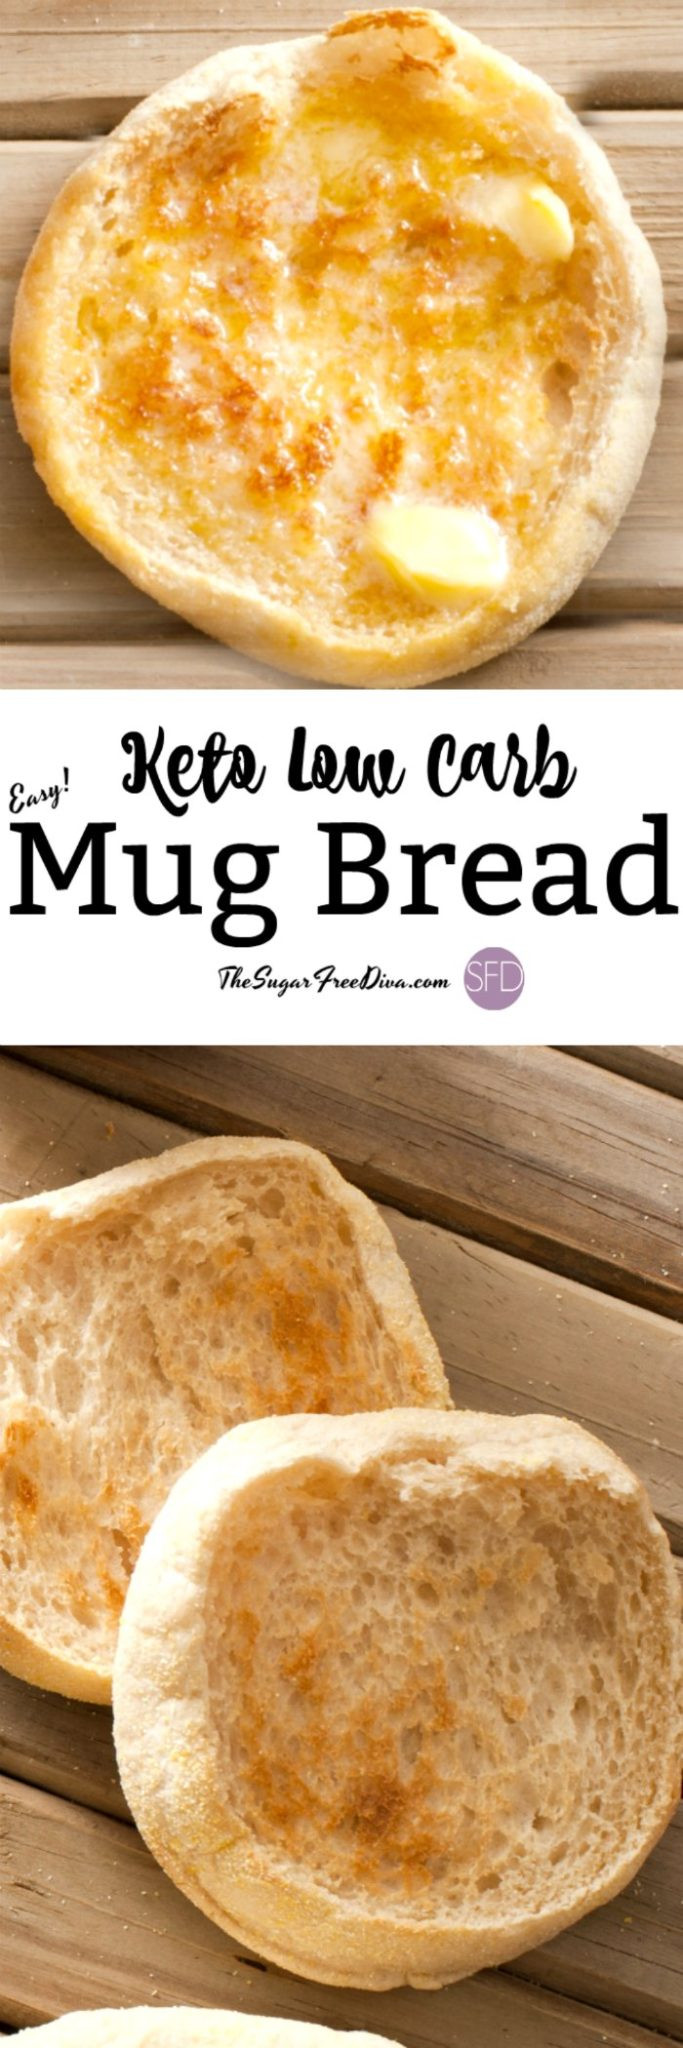 Keto Low Carb Bread
 Easy and Yummy Keto Low Carb Mug Bread Recipe